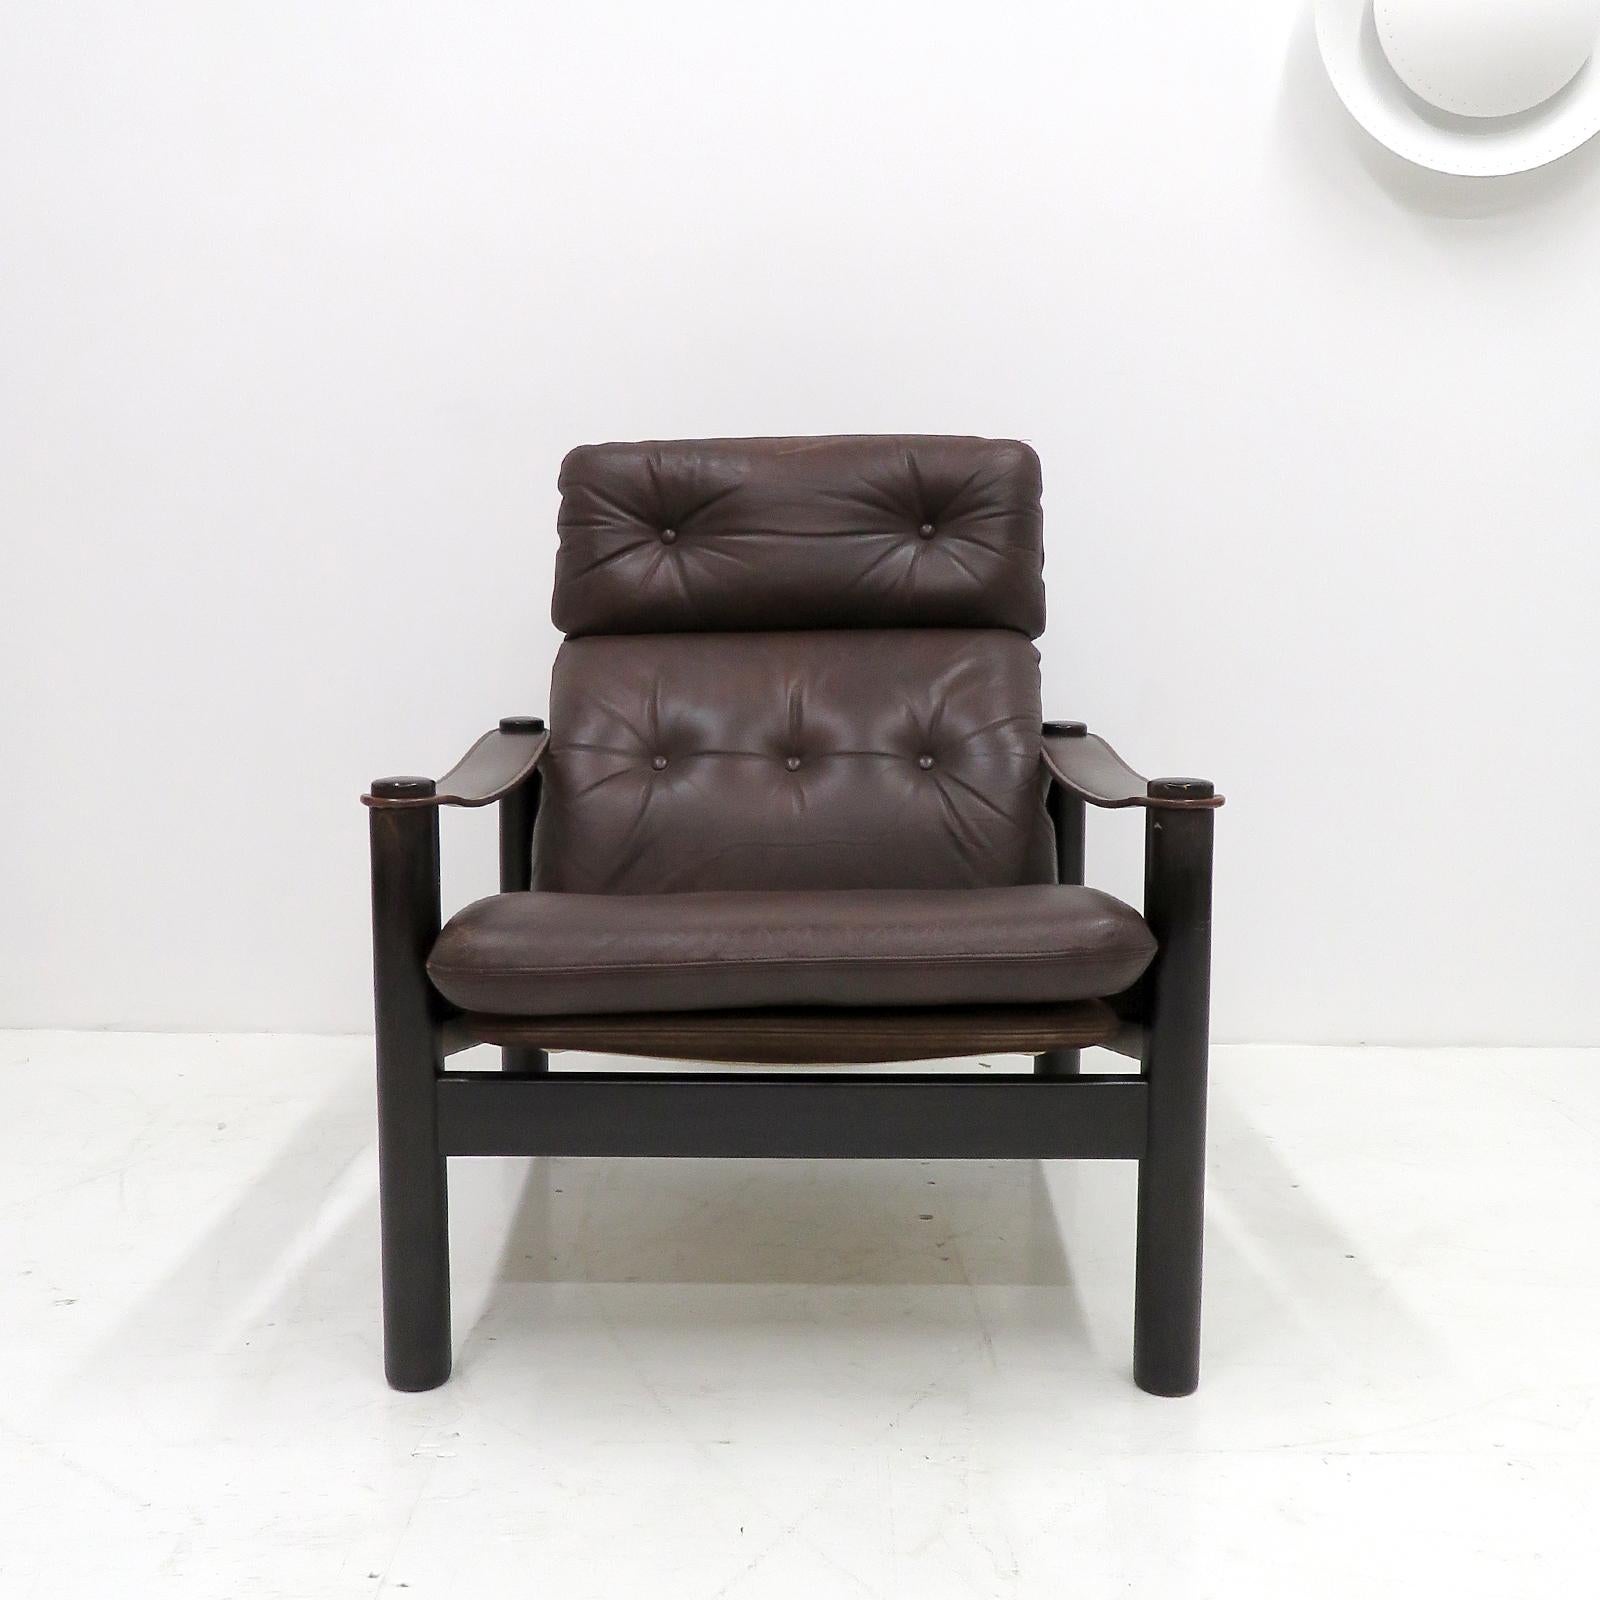 Magnifique chaise longue danoise en cuir 'model BEO' de Beeche & Søren Nissen, 1970 avec structure en bois de hêtre teinté foncé, rembourrée en cuir marron et le dossier en cuir nubuck, fabriquée par Jeki Møbler Bramming.